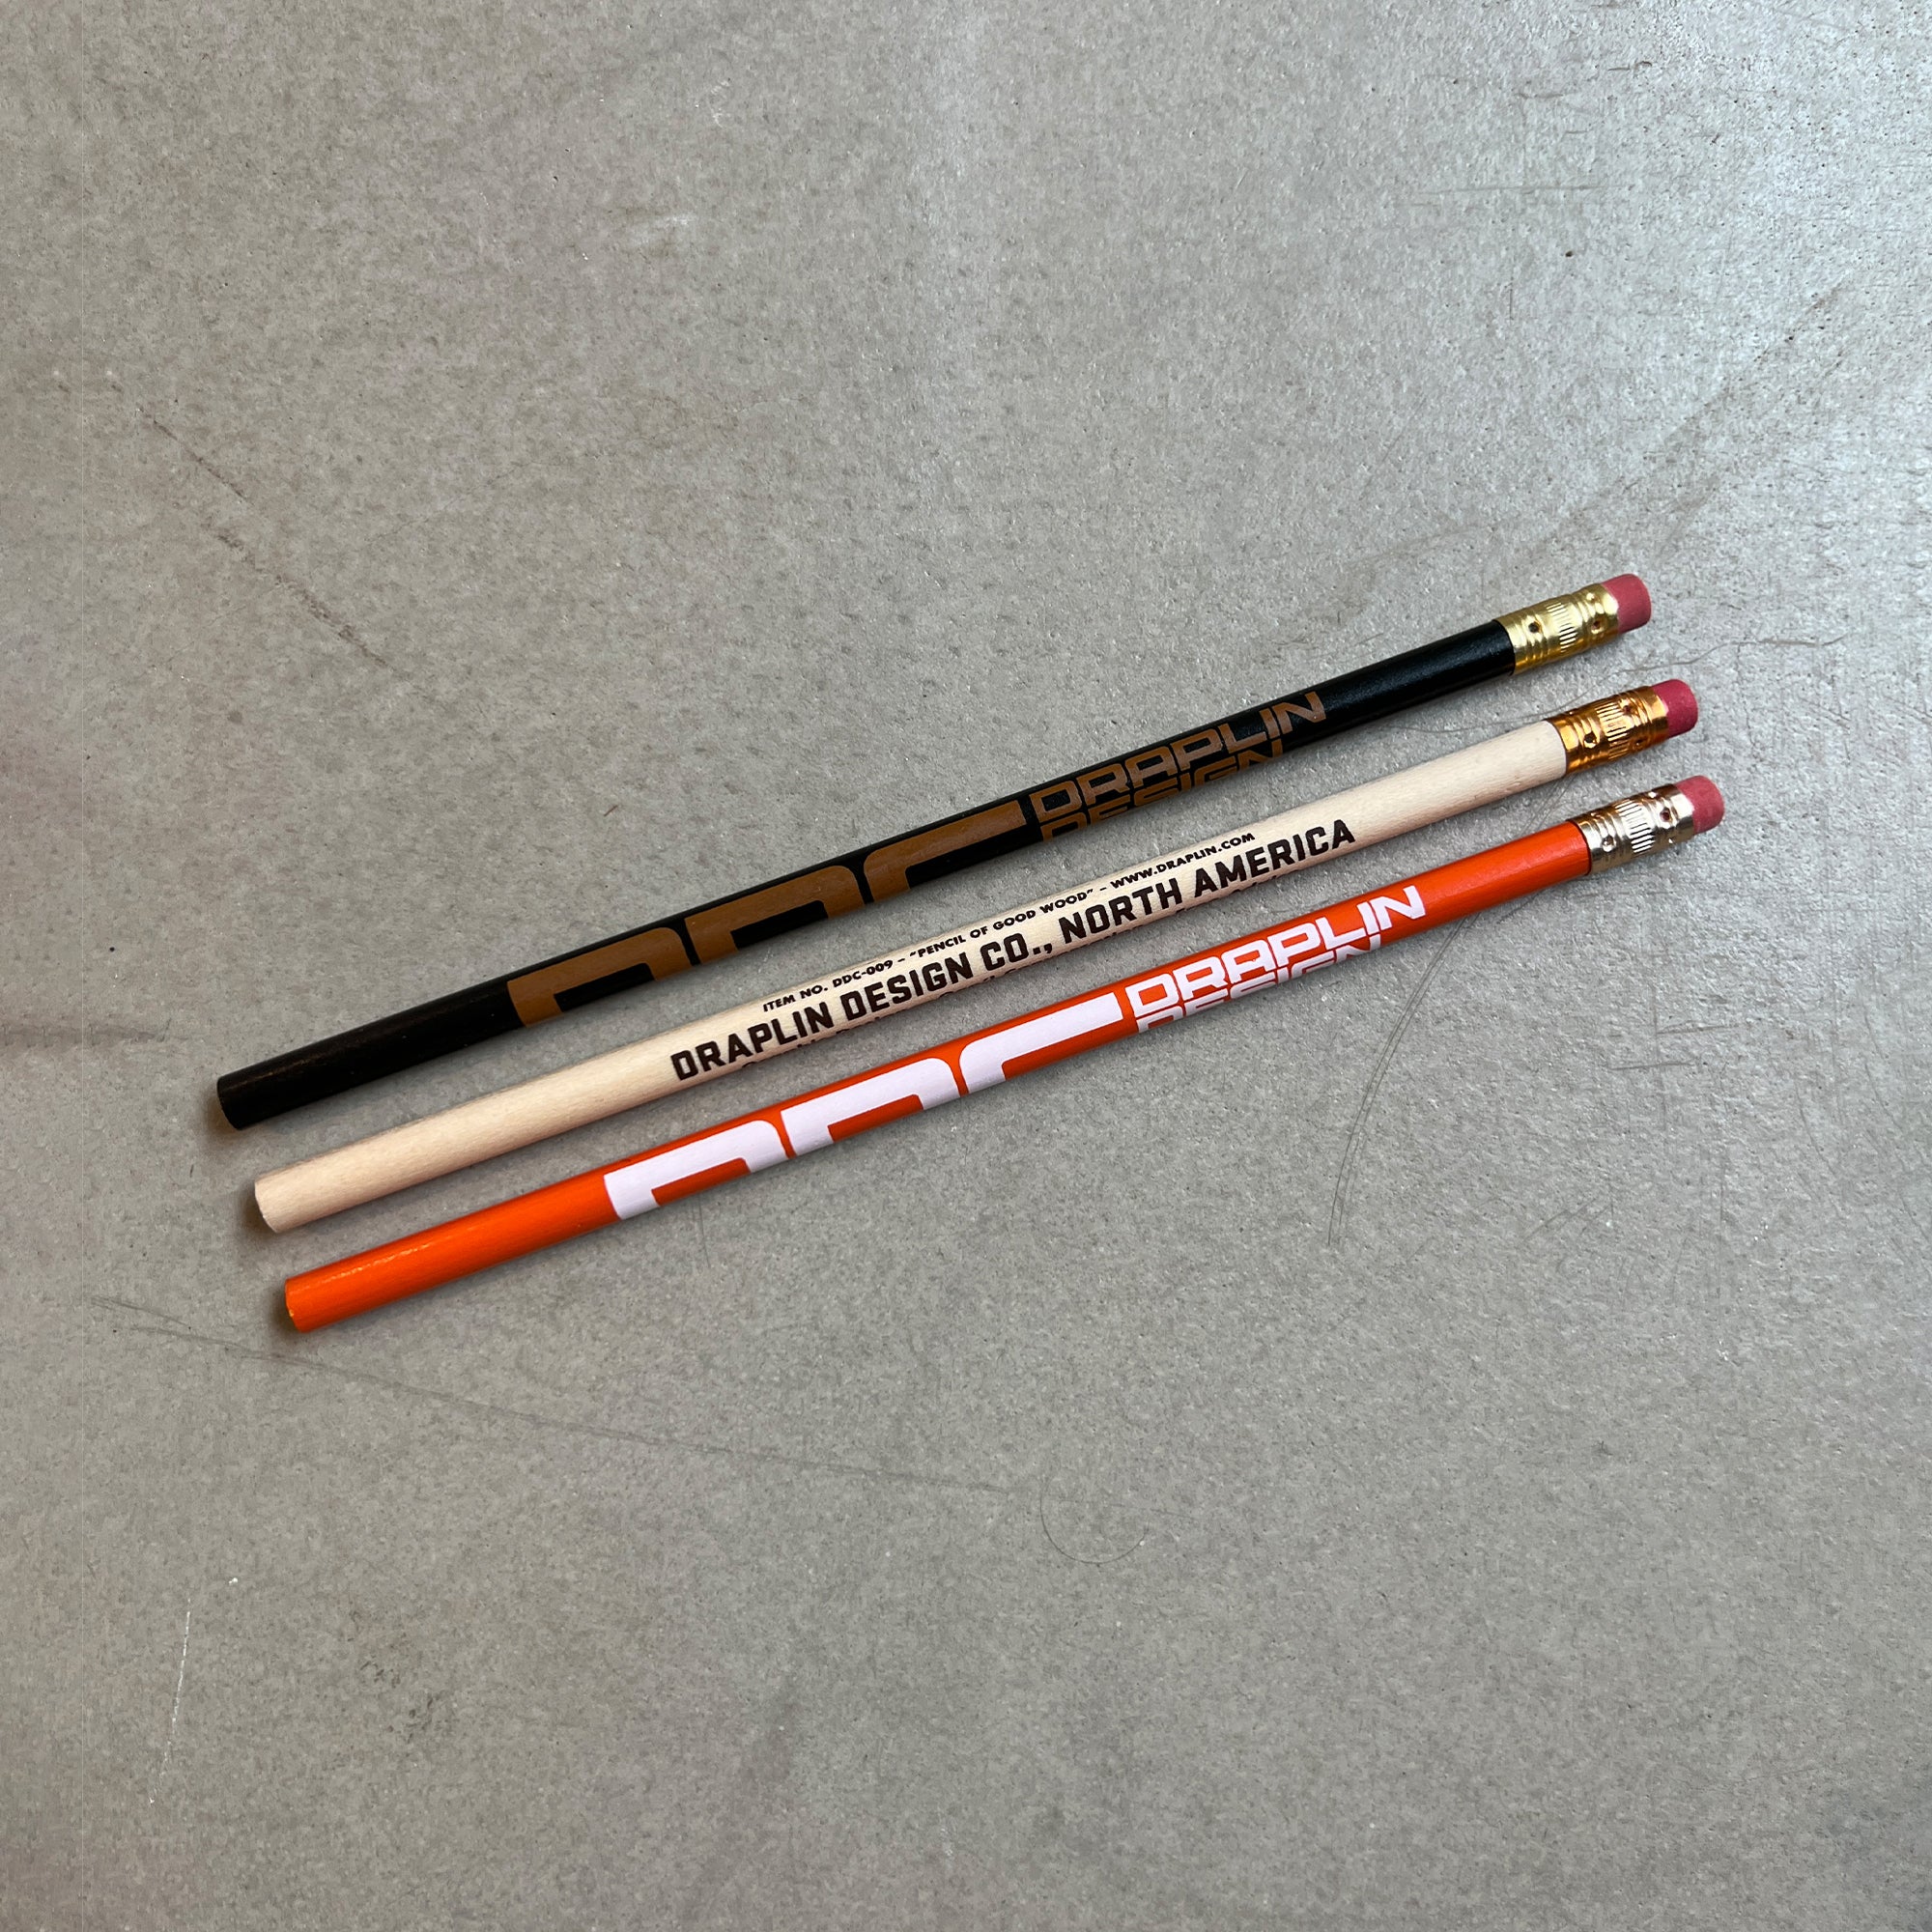 DDC-009 "The Good Wood Pencils"